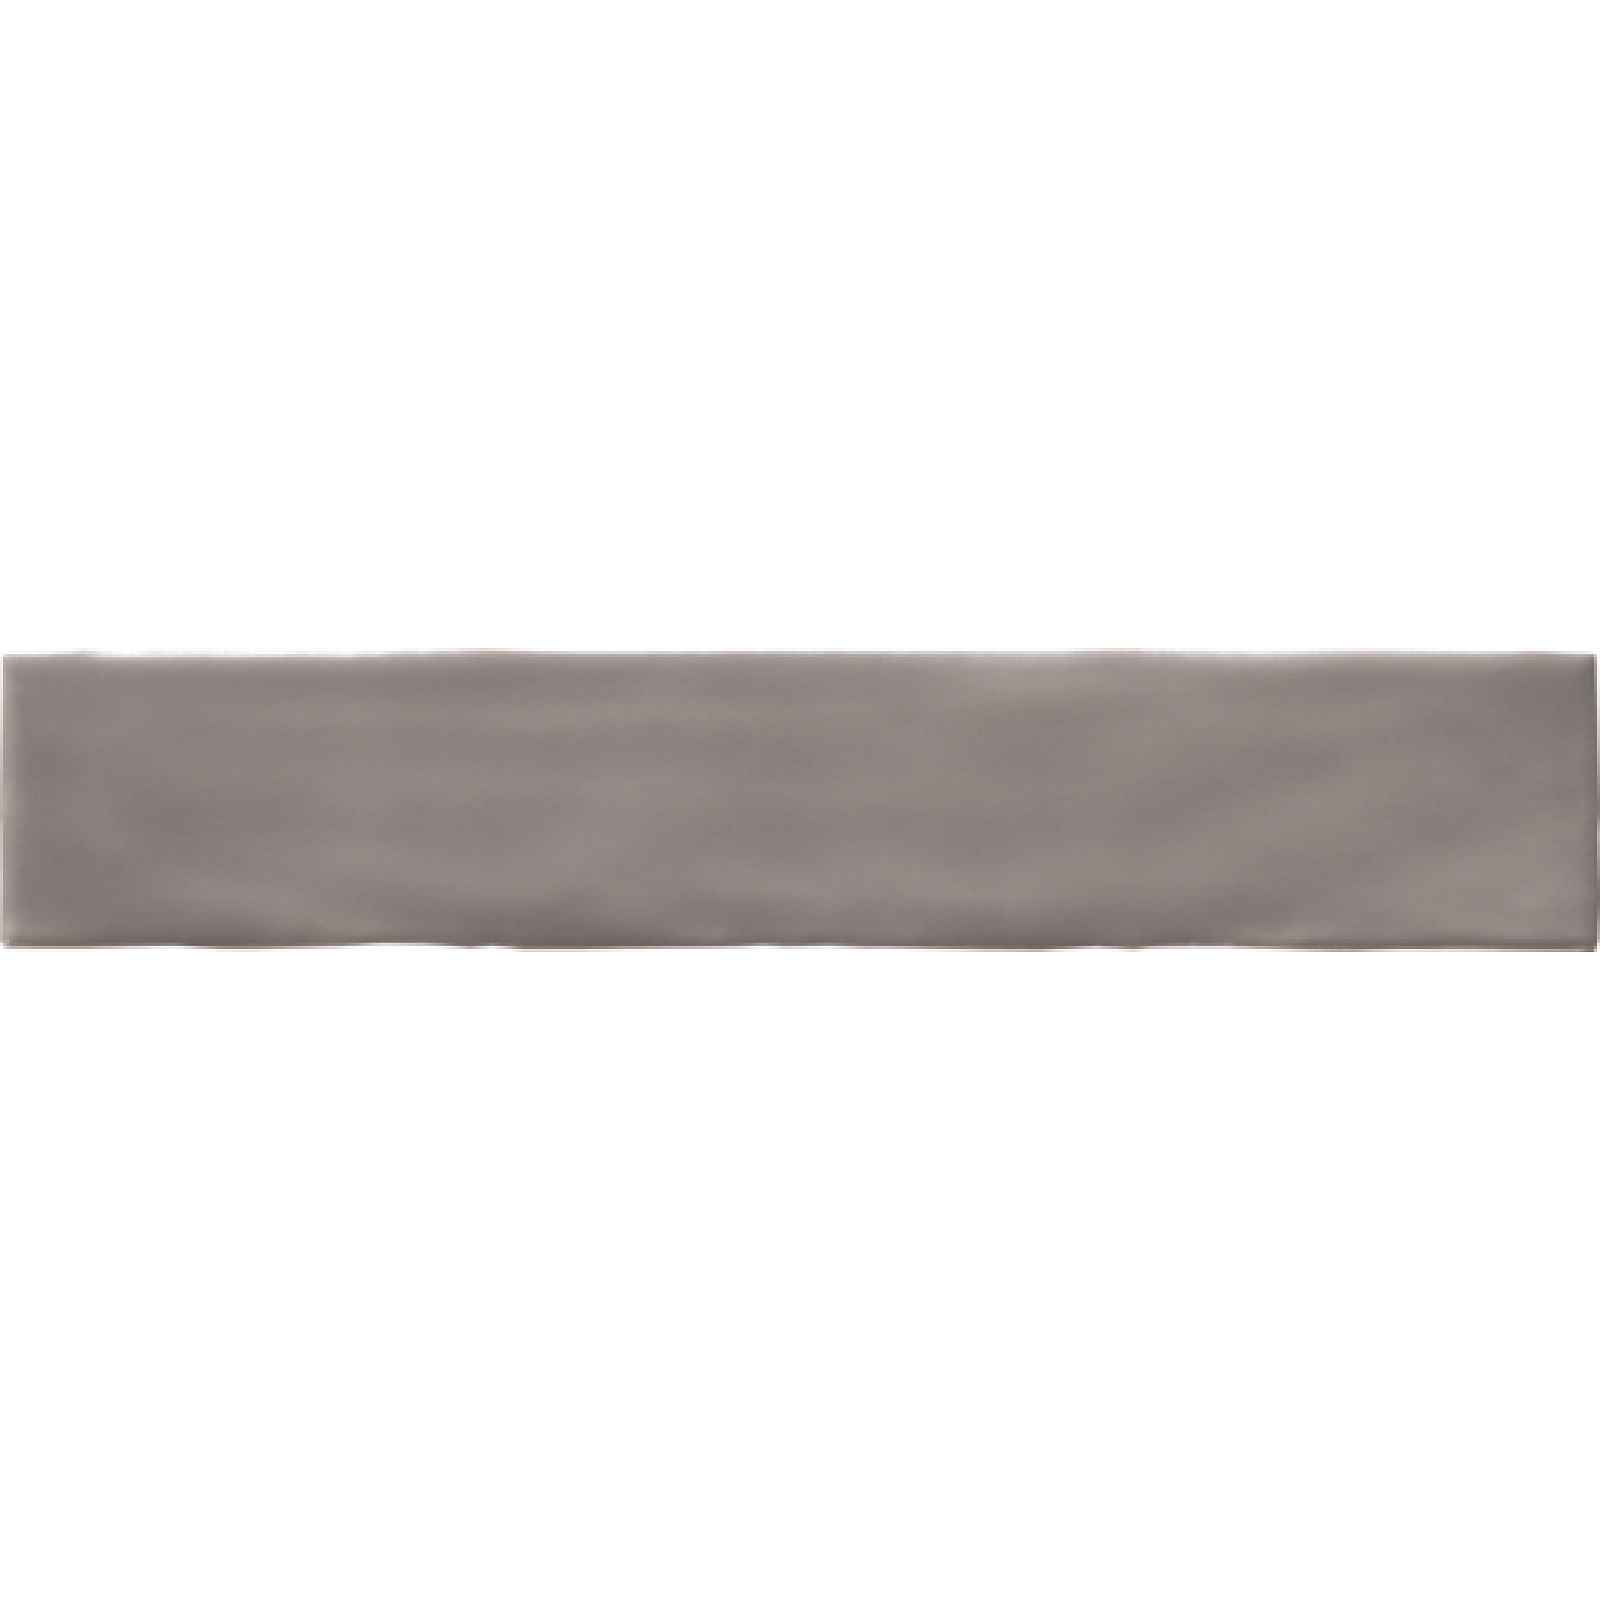 Obklad Peronda Argila gris 7,5x30 cm mat PEACEGR